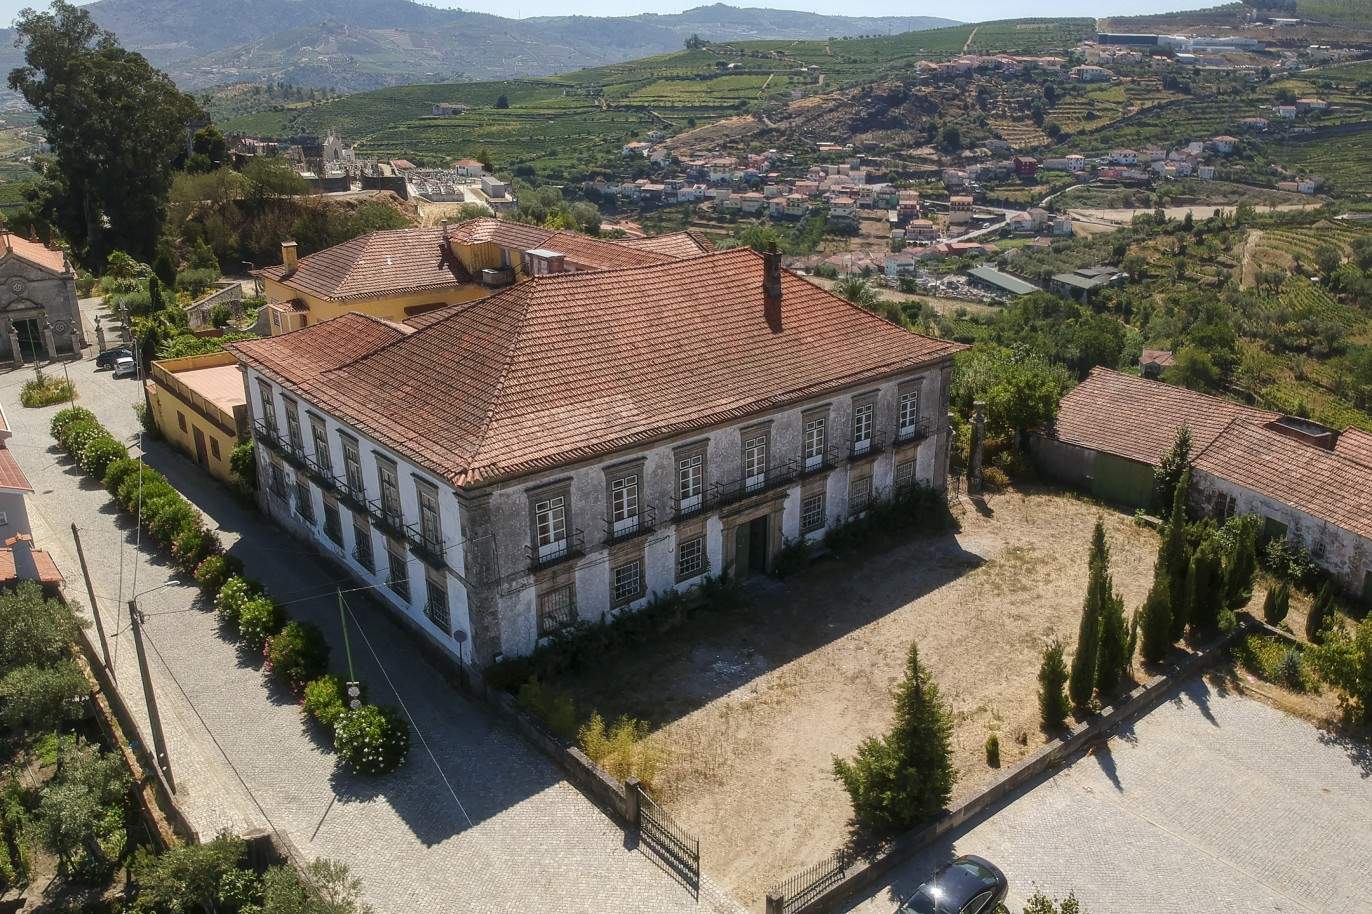 Vente : restauration du Palacete avec jardins et fontaine centenaire, à Lamego, Valeé du Douro, nord du Portugal_207355